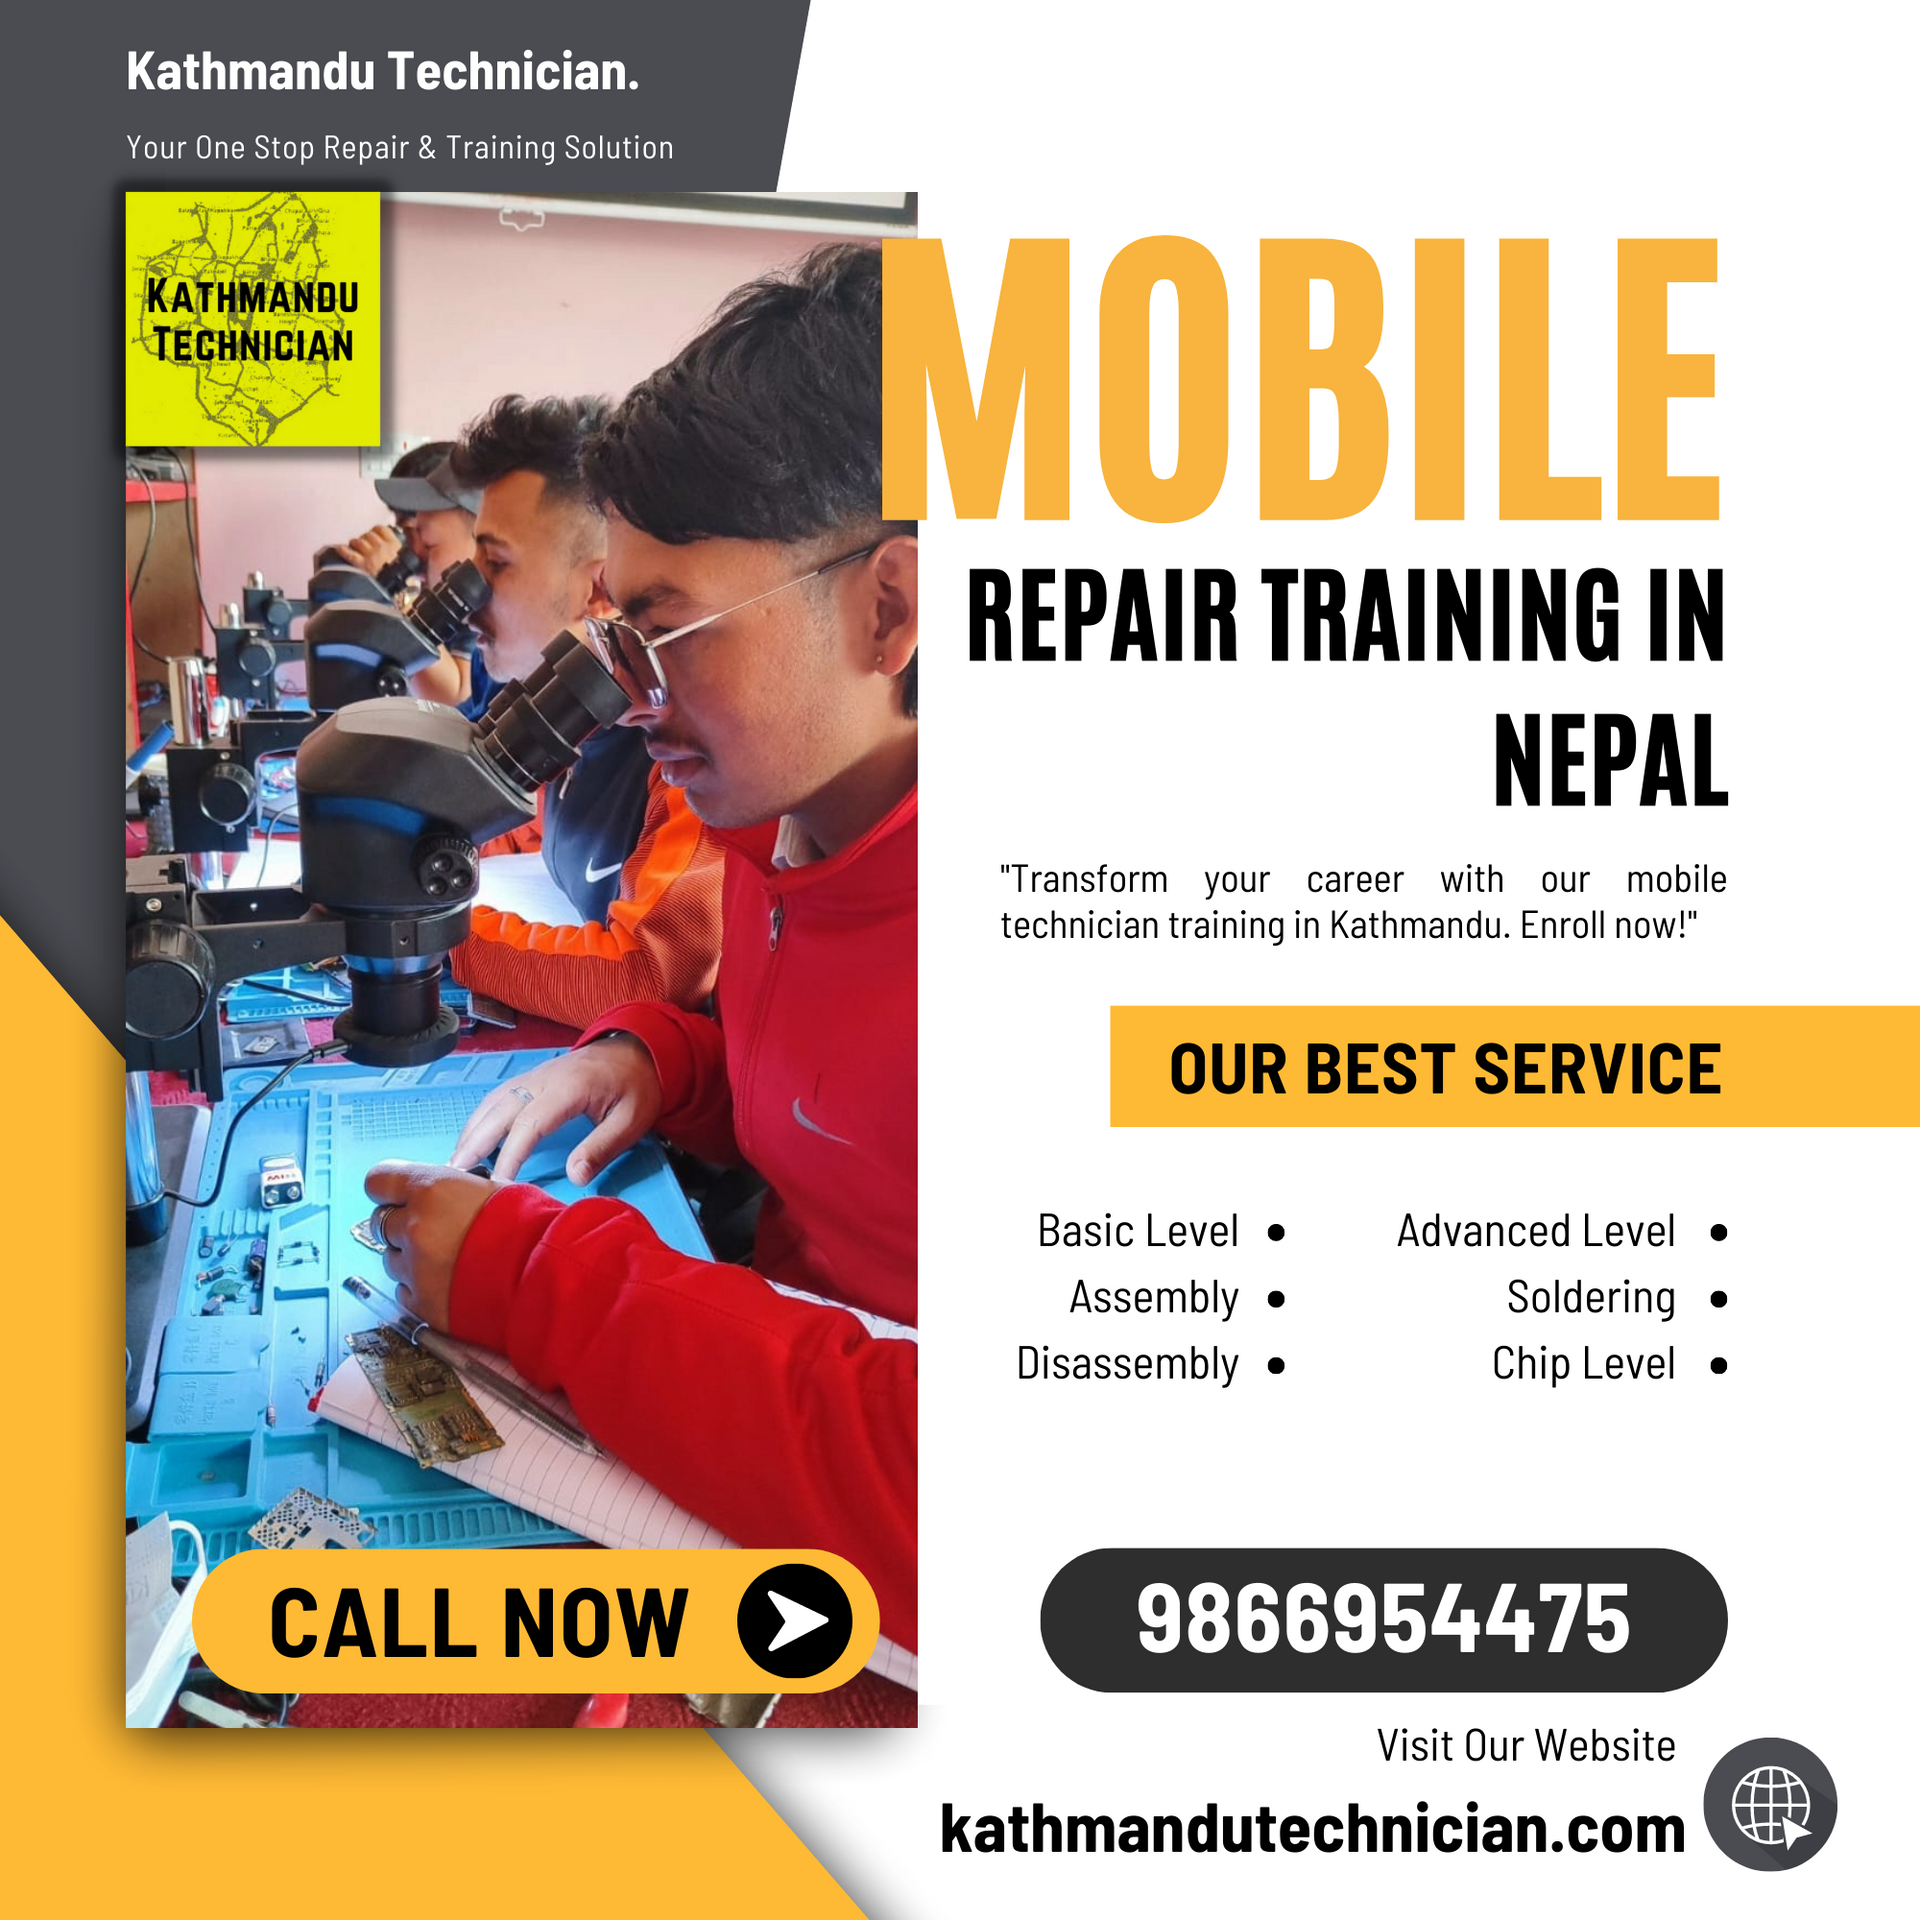 mobile repair training in nepal